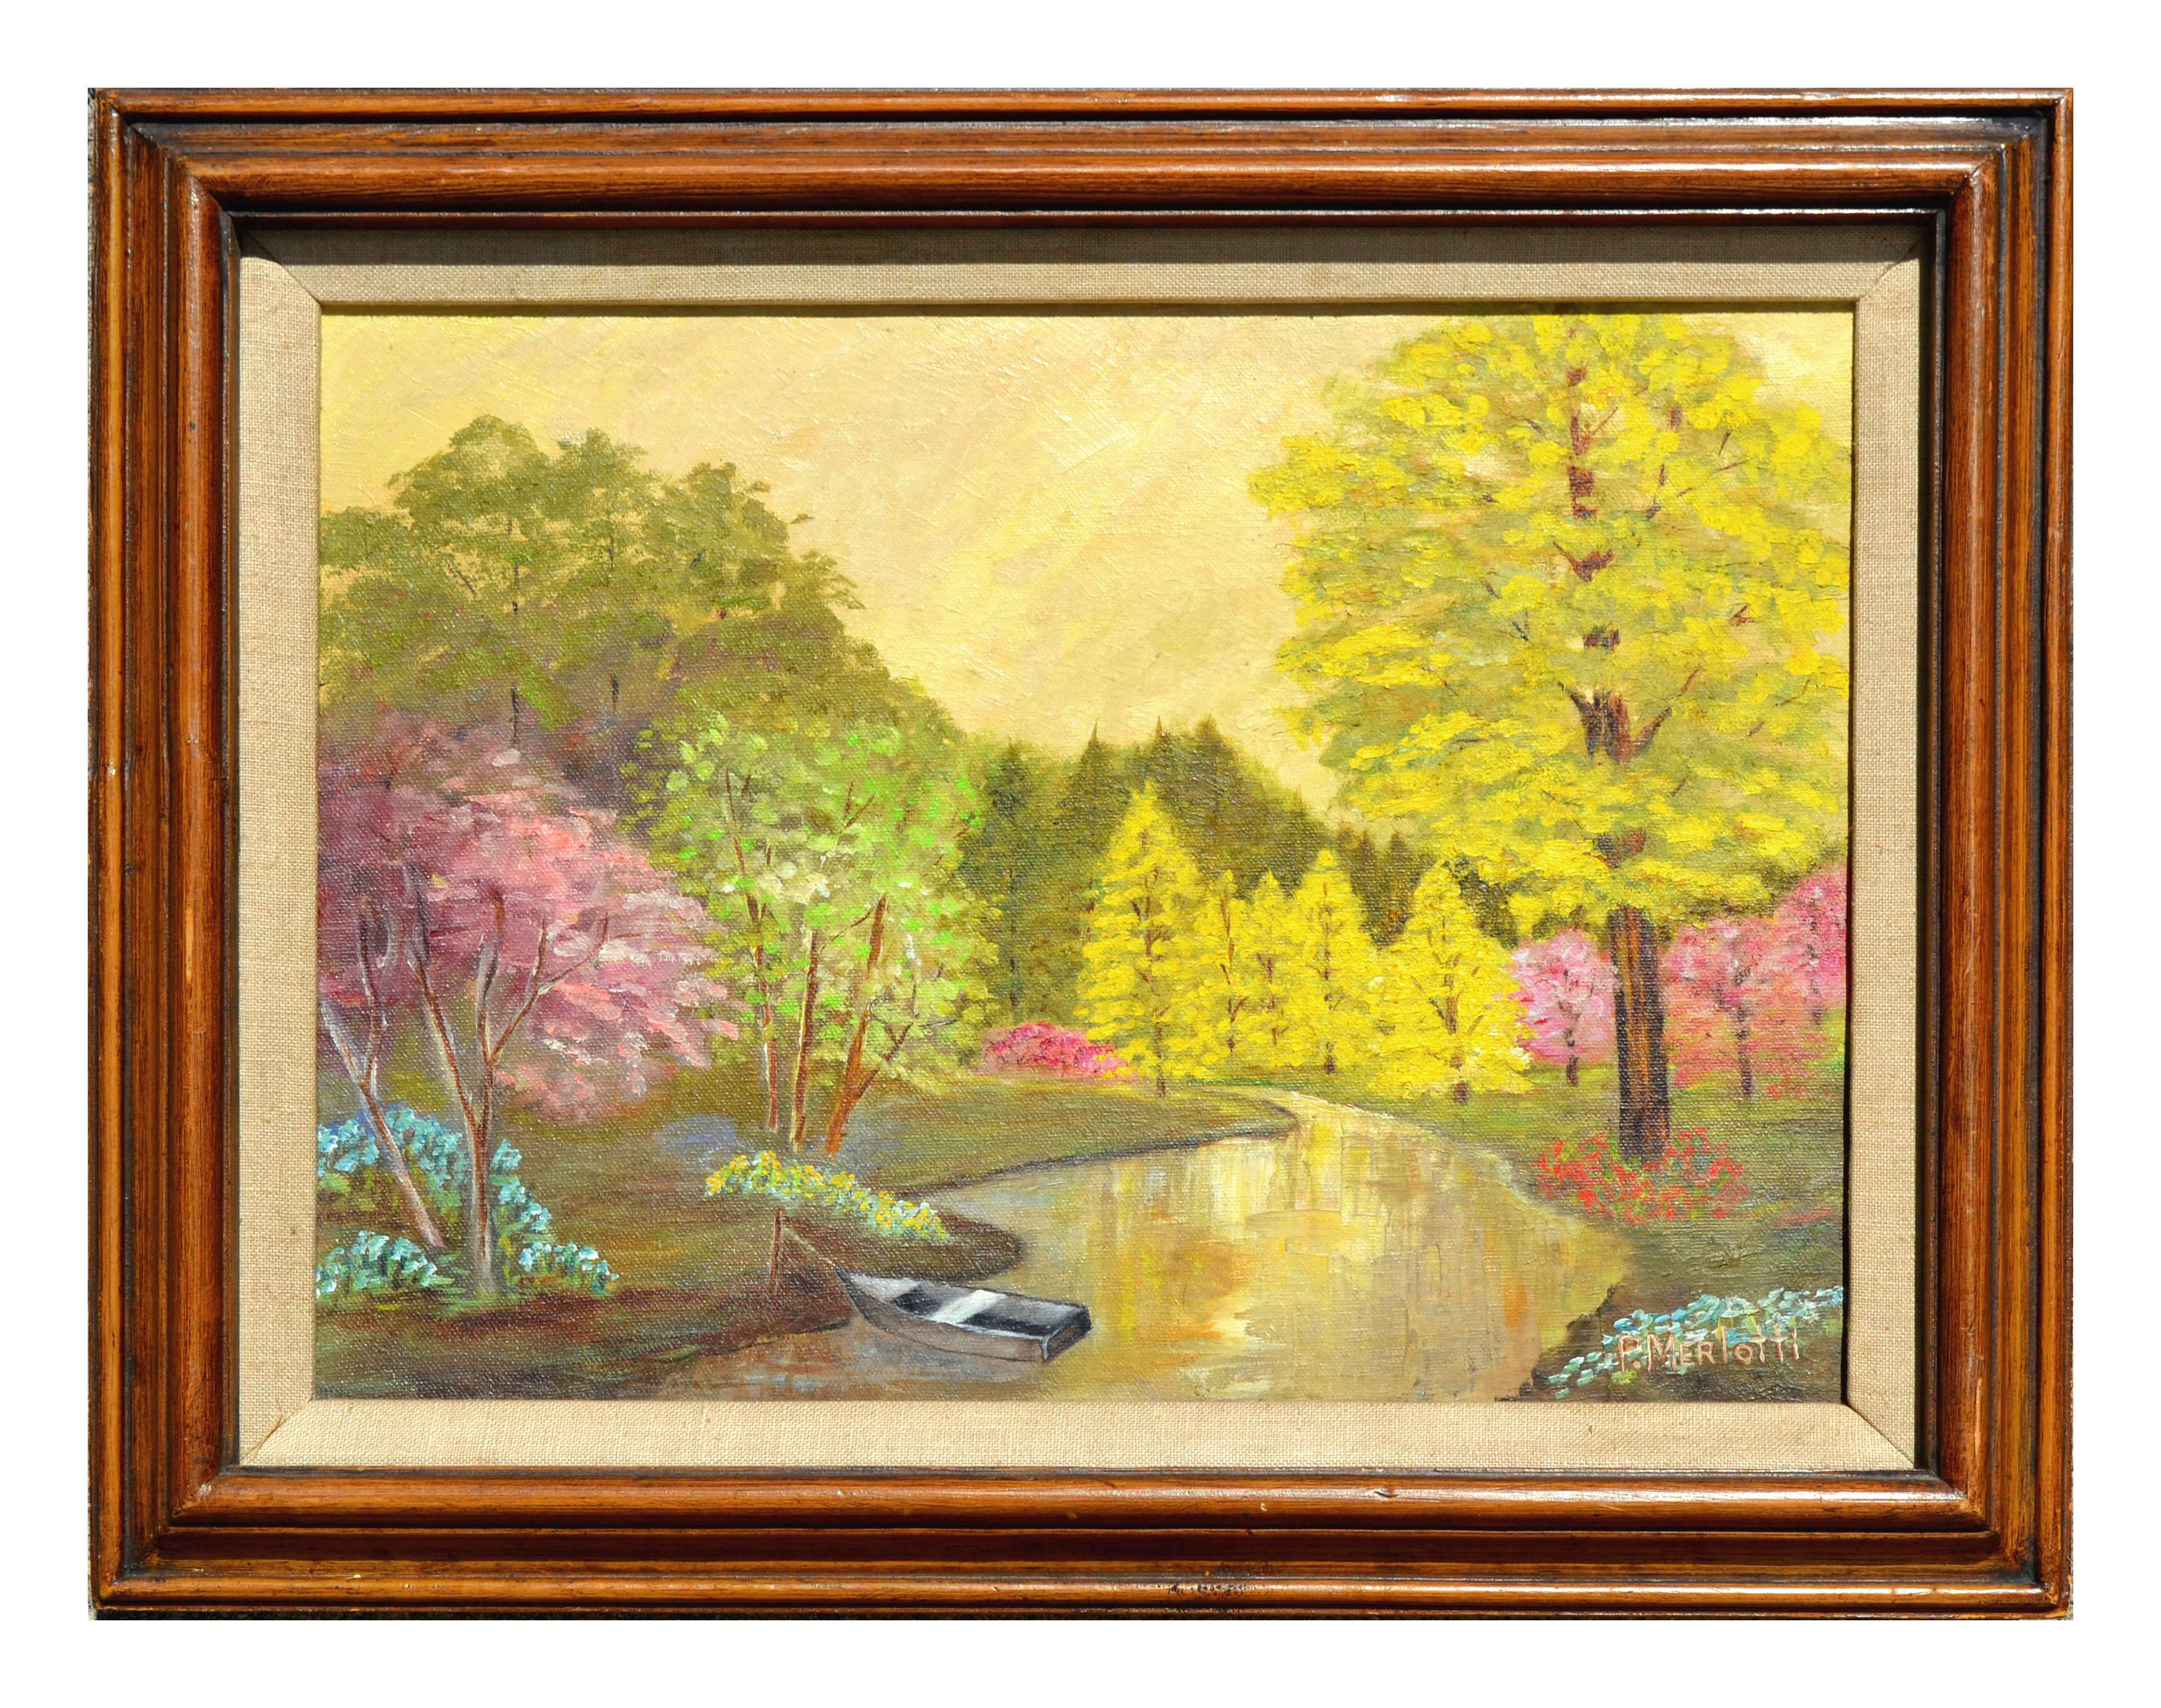 Landscape Painting Pauline Merlotti - Paysage du printemps dans le parc 